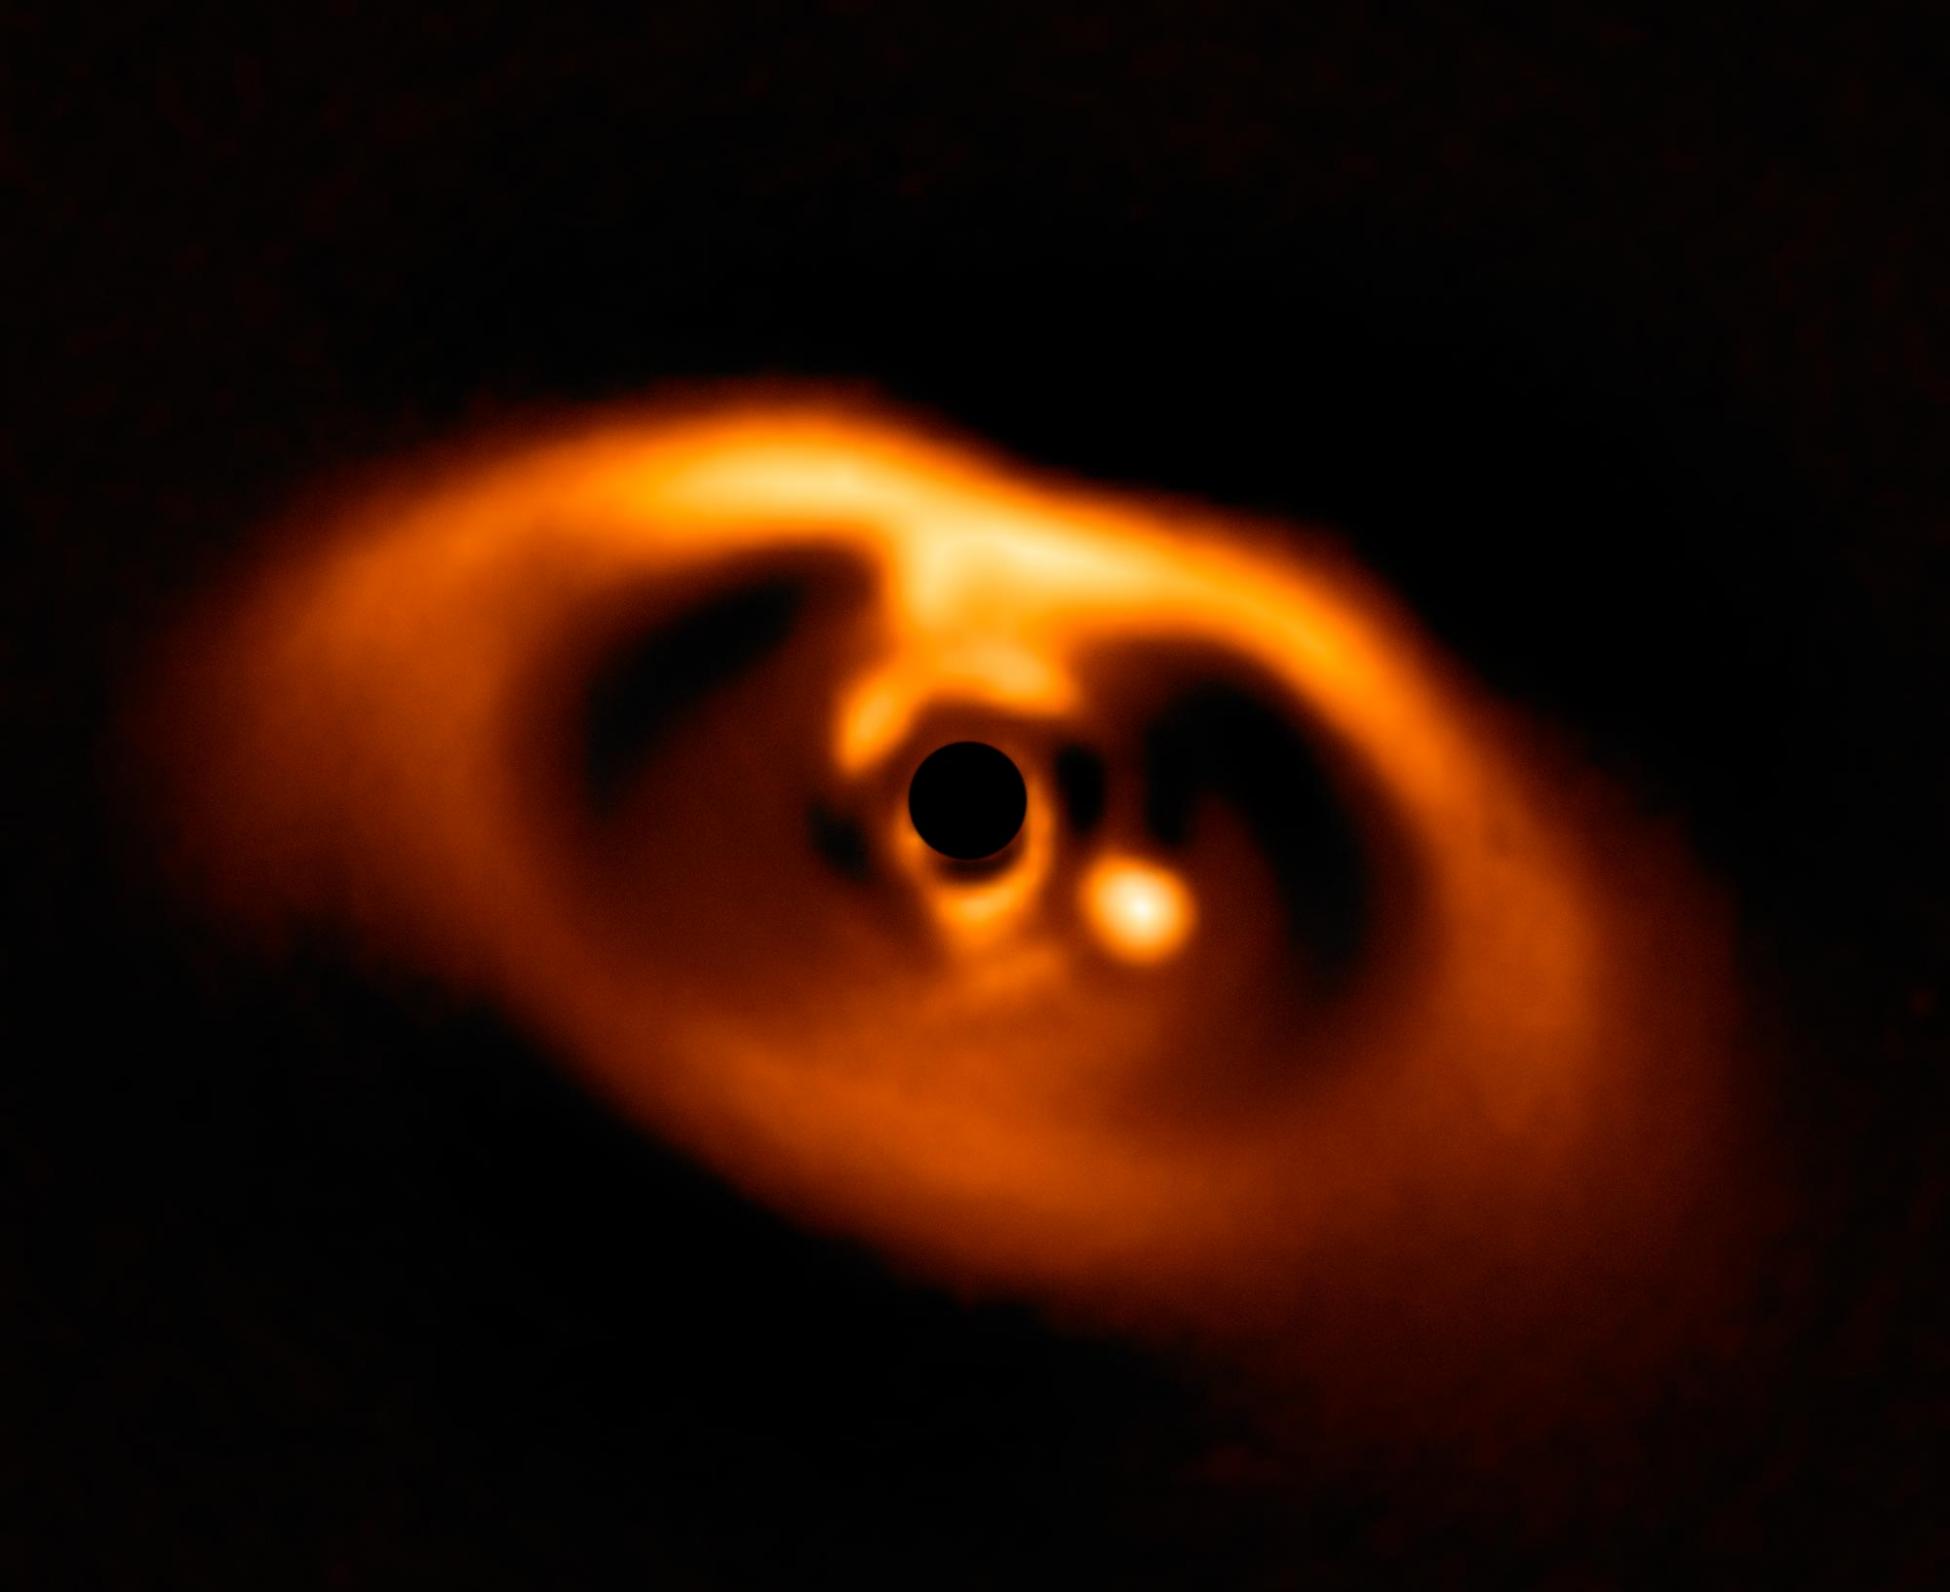 哈勃望远镜观察到遥远太阳系PDS 70正处于形成过程的巨大系外行星